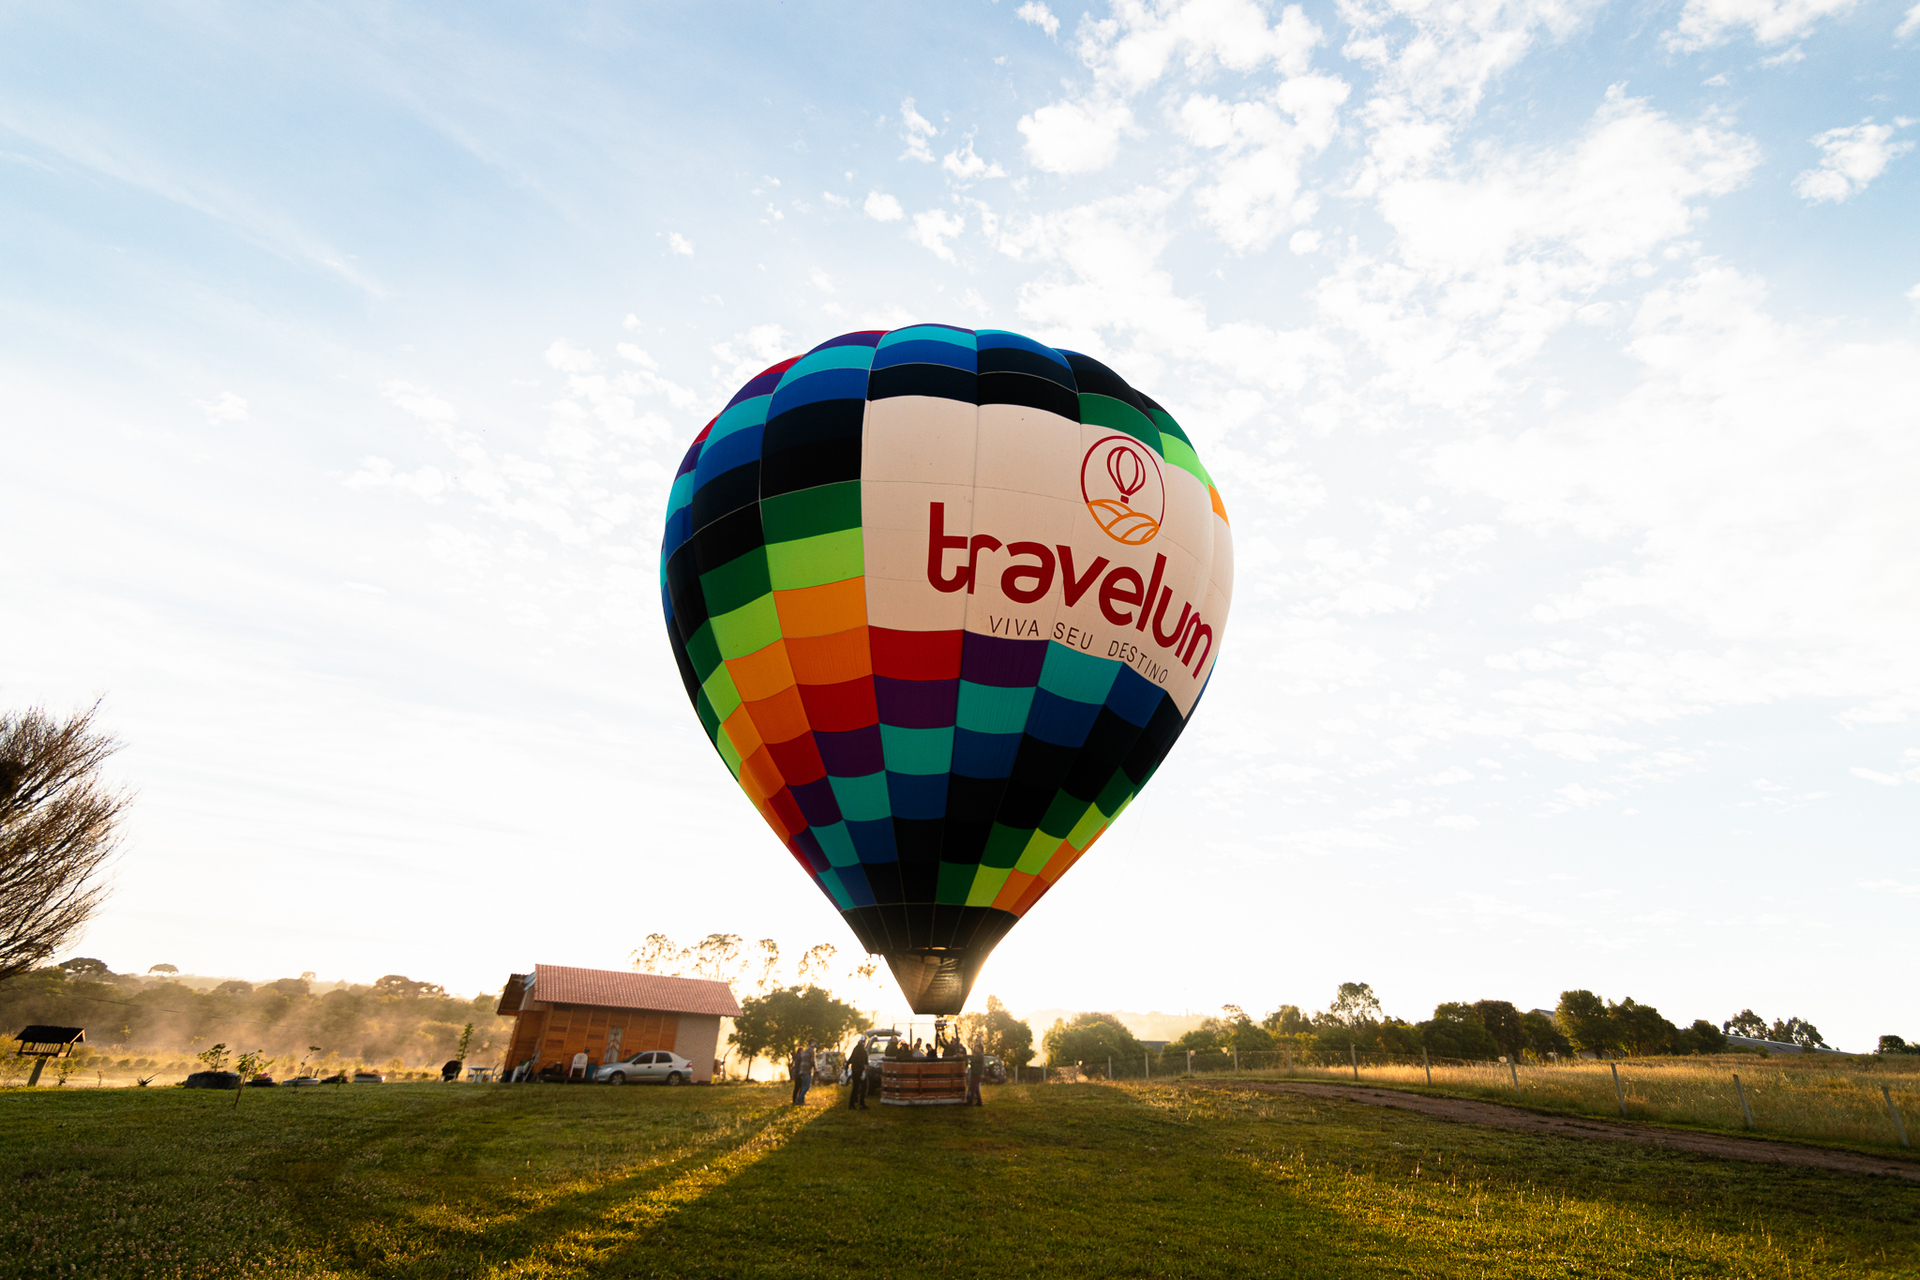 Voar de balão é daquelas experiências que fascinam viajantes de todas as idades